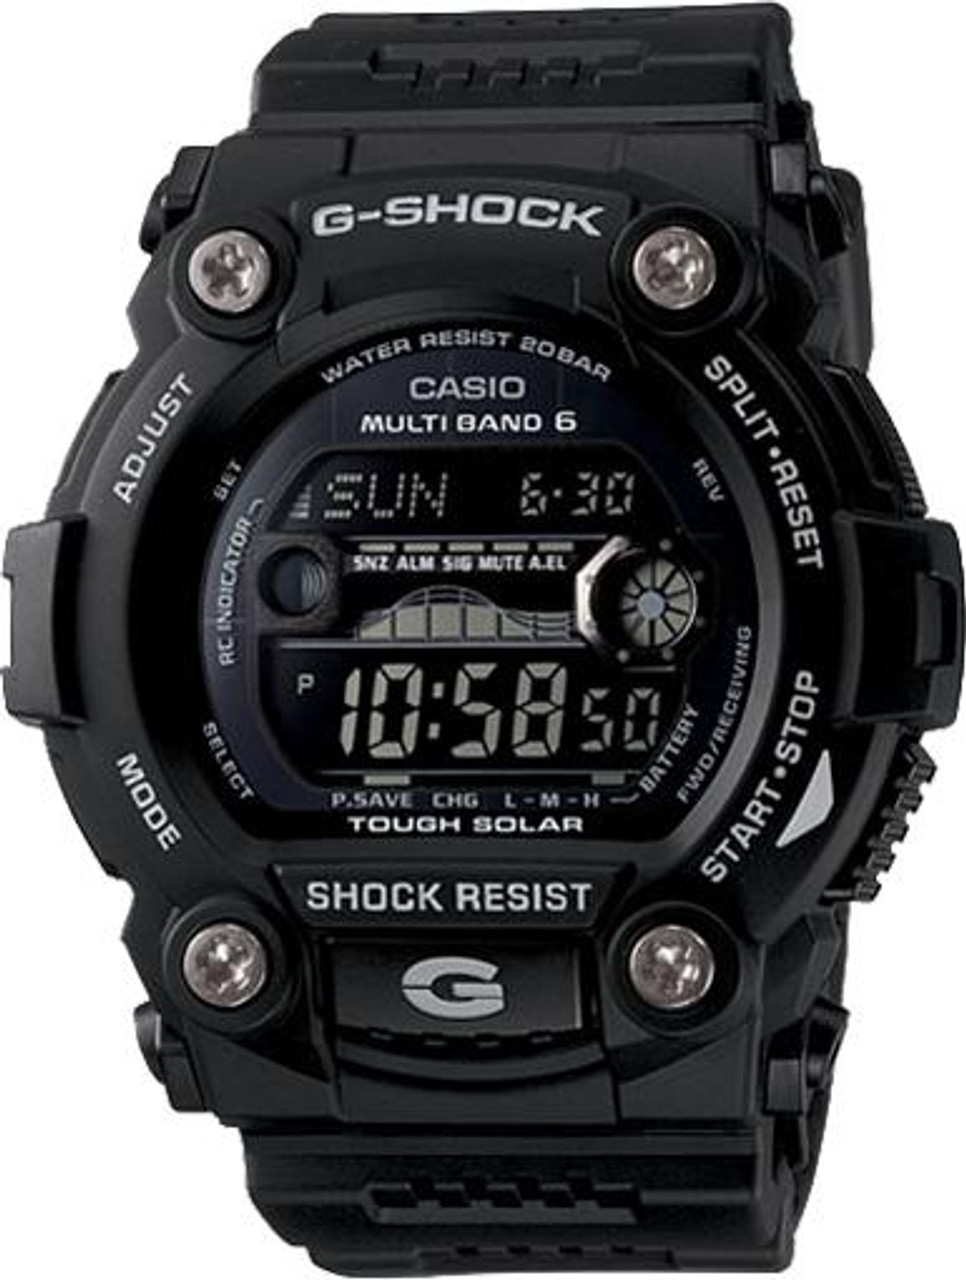 CASIO G-SHOCK ATOMIC-SOLAR RESCUE GW-7900B-1VCR